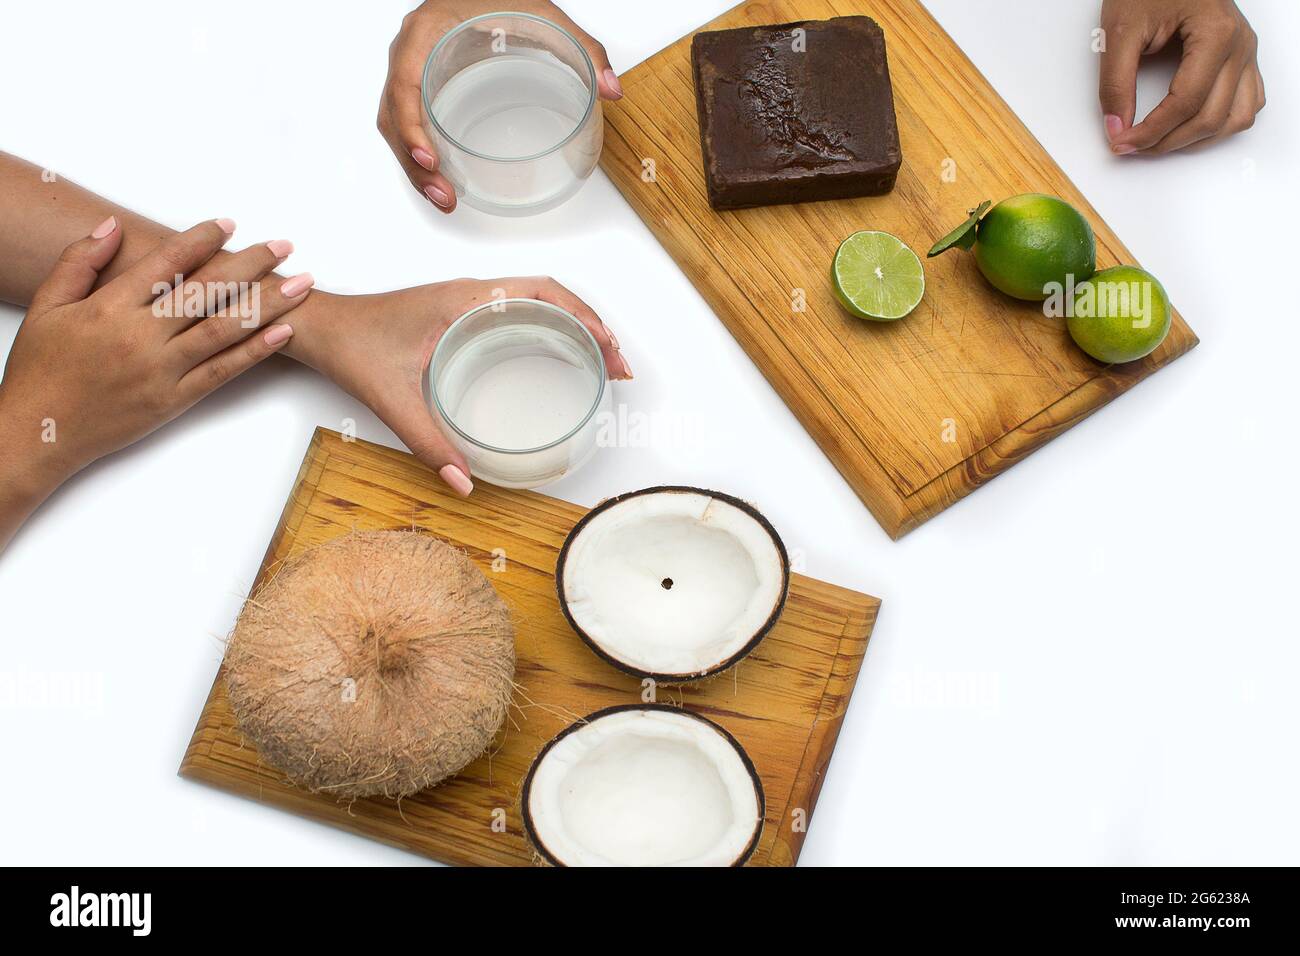 Le mani della donna tengono panela di canna da zucchero, limoni e noci di cocco su una tavola di legno su uno sfondo bianco. La citronella e l'acqua di cocco sono bevande tropicali Foto Stock